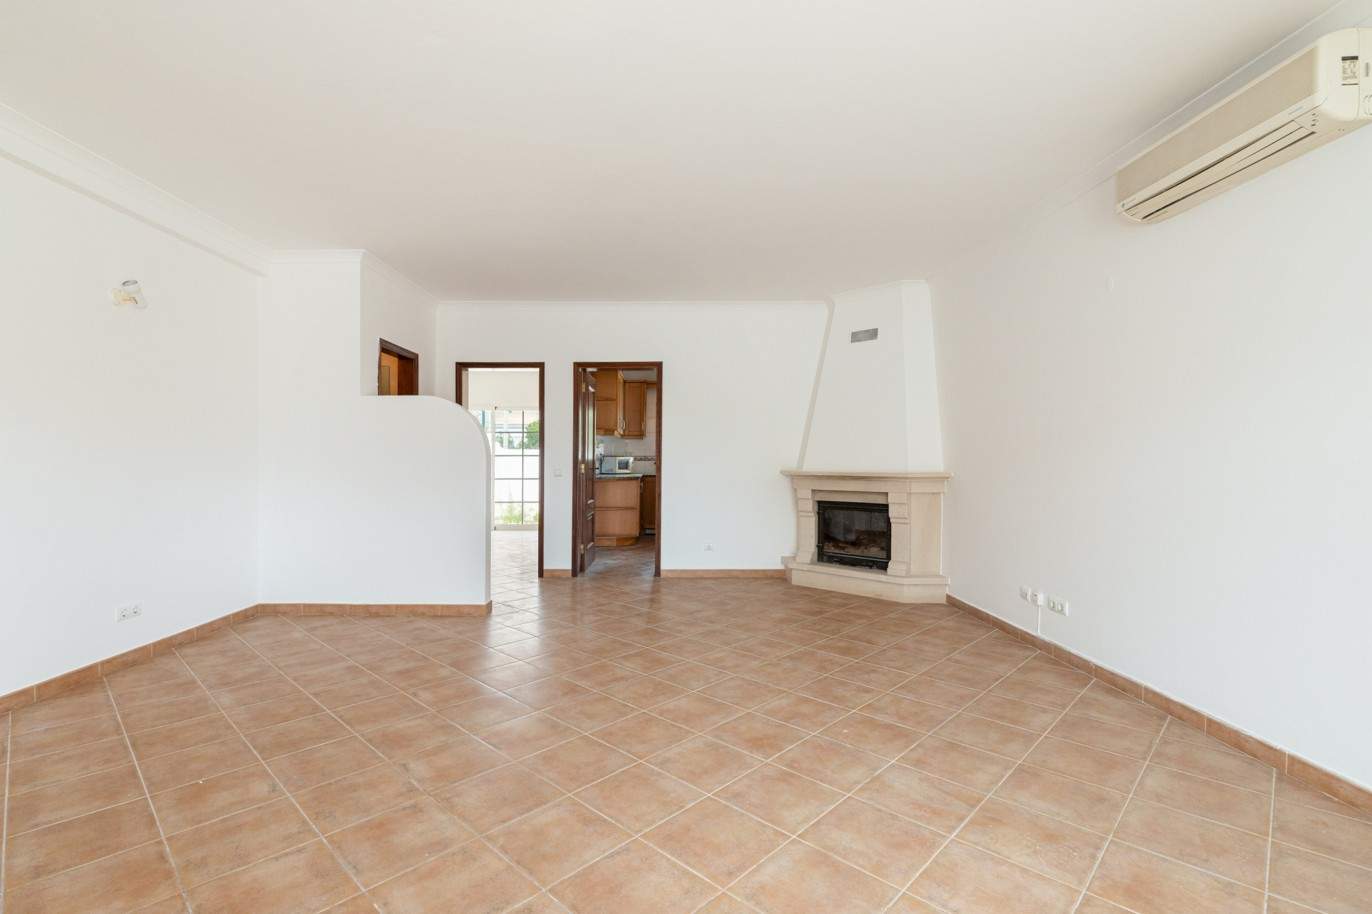 Villa de 3 dormitorios en venta en Porto de Mós, Lagos, Algarve_201766